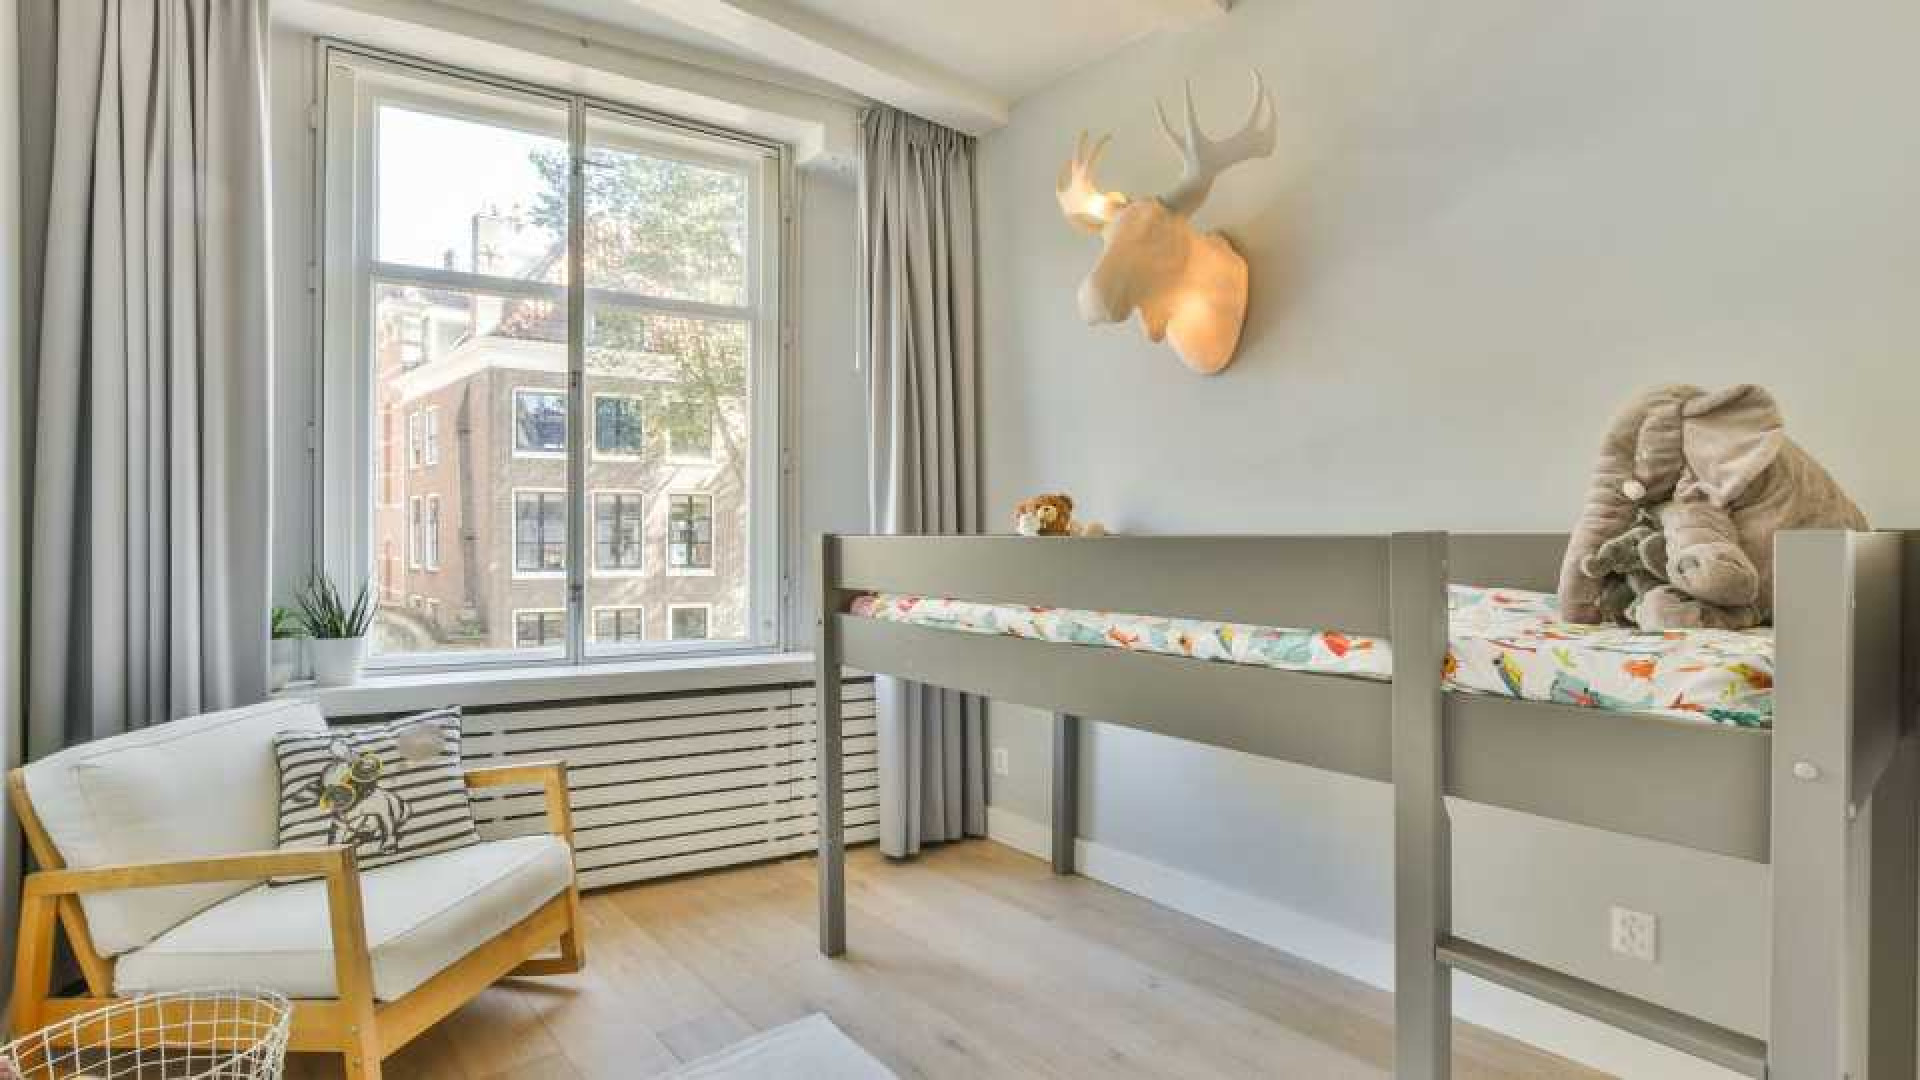 TV presentator Art Rooijakkers zet na relatiebreuk zijn Amsterdamse grachtenappartement te koop. Zie foto's